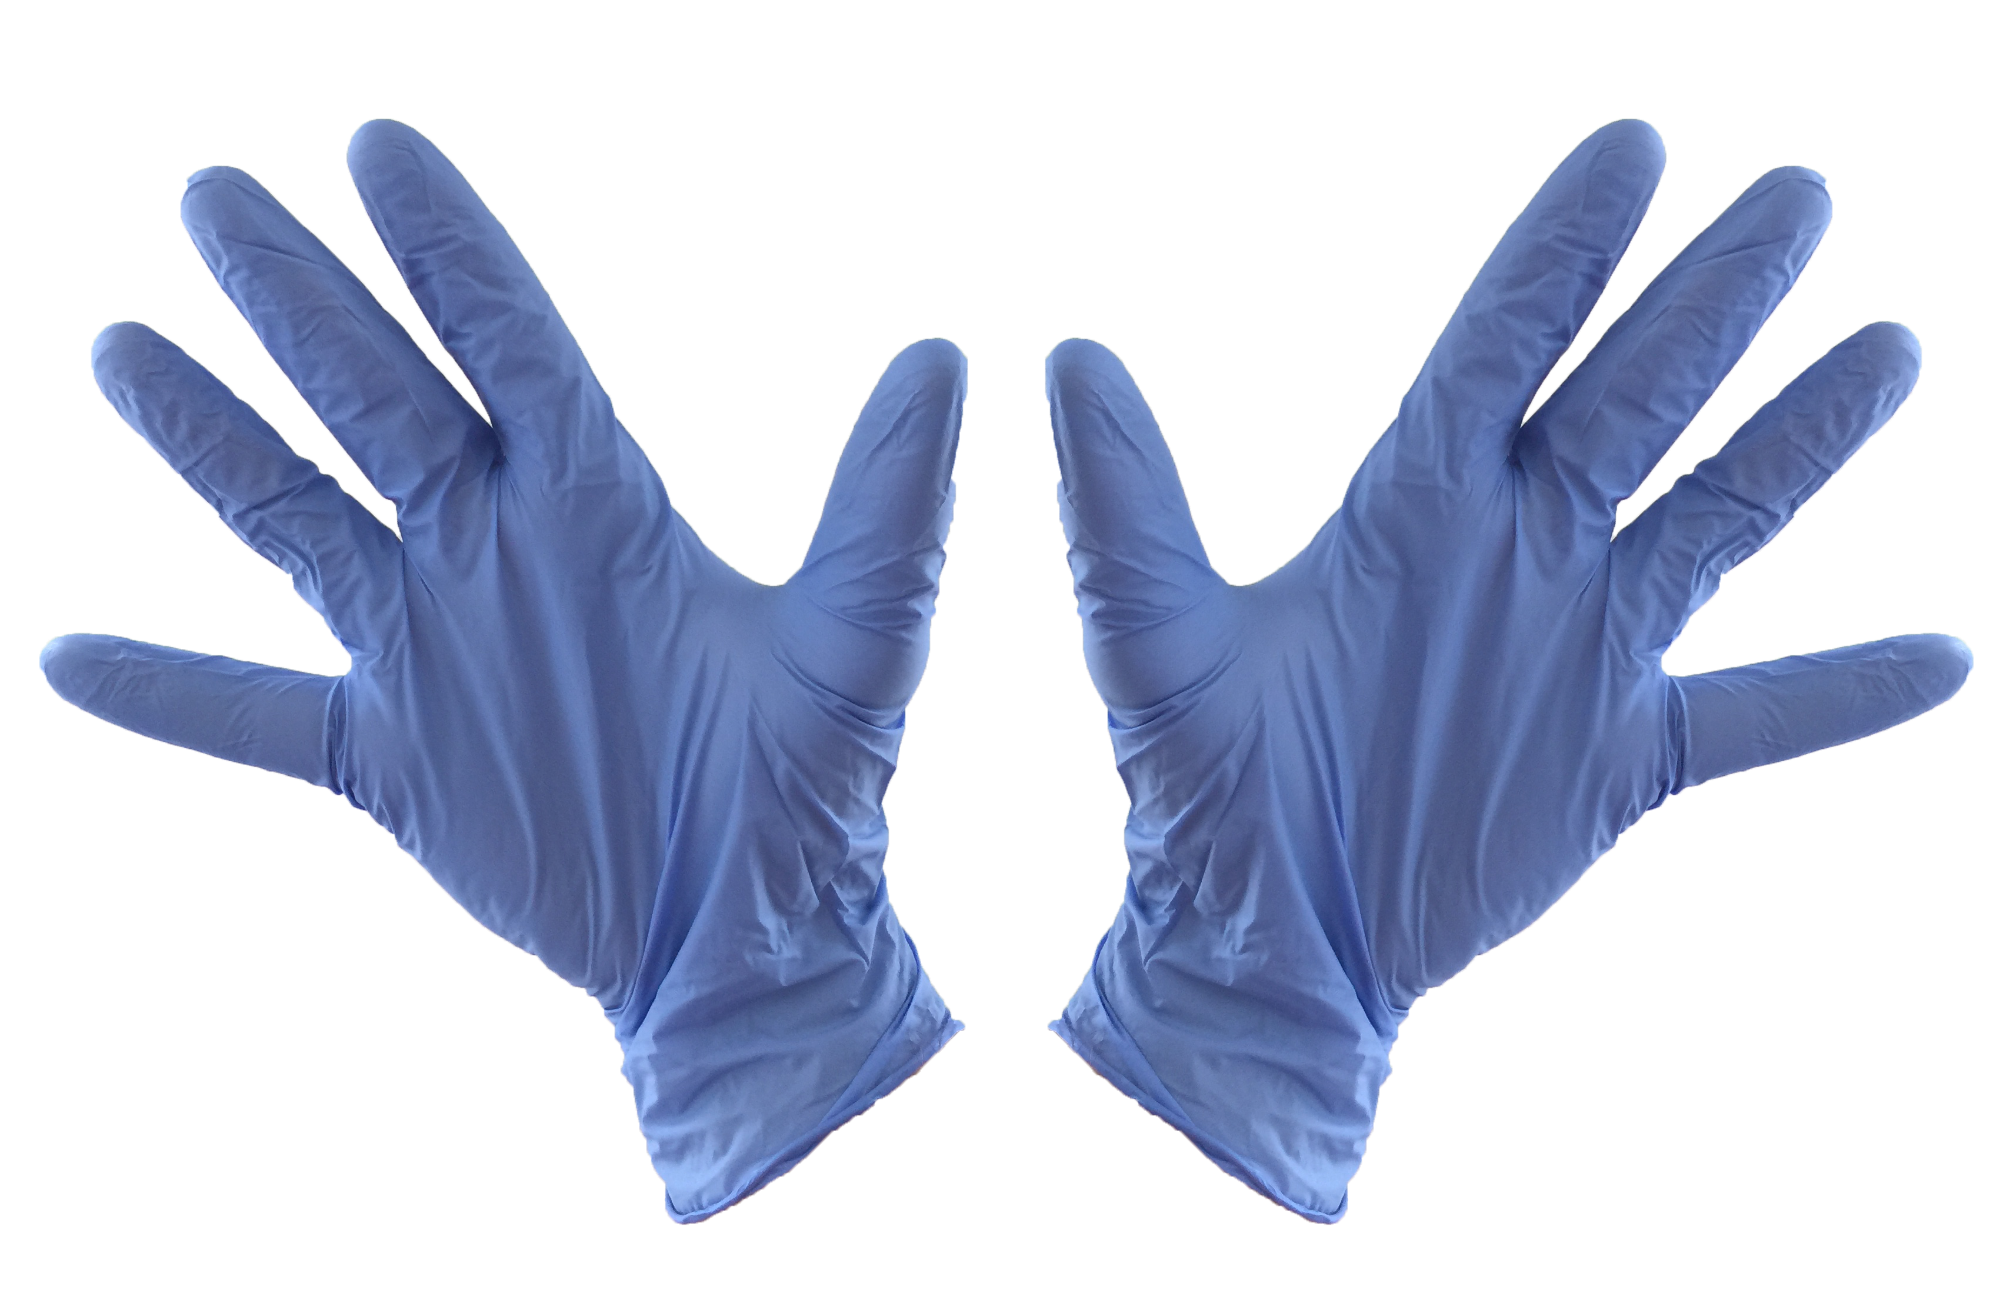 Medical Gloves PNG Photo Image